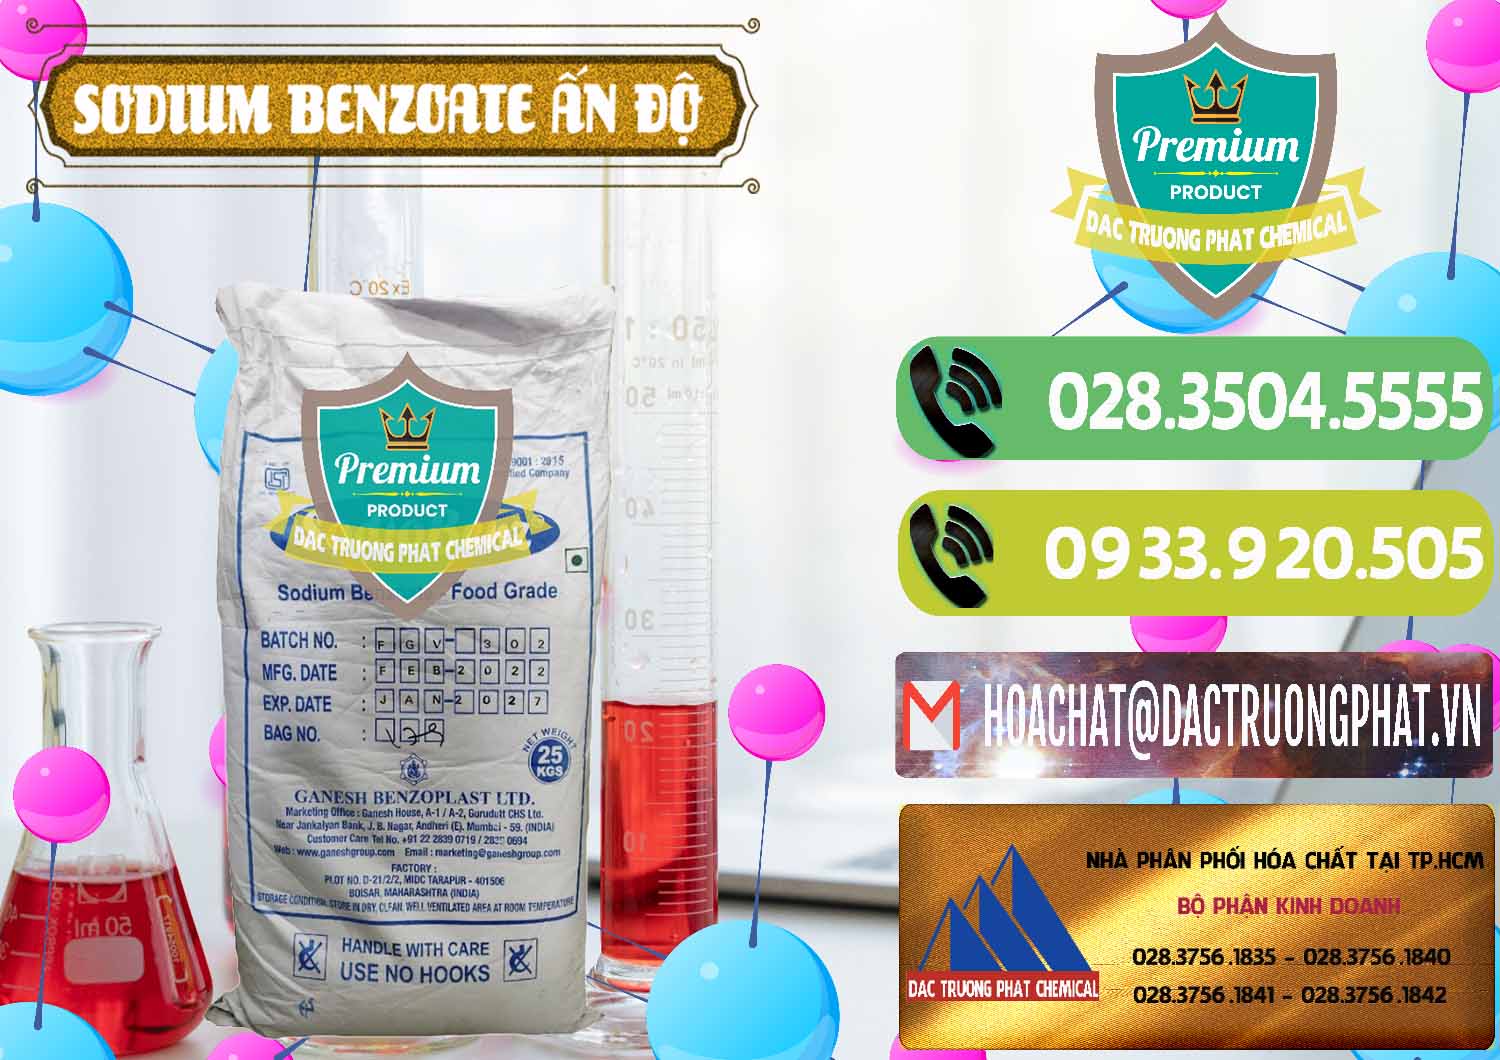 Chuyên kinh doanh - bán Sodium Benzoate - Mốc Bột Ấn Độ India - 0361 - Nơi chuyên bán và cung cấp hóa chất tại TP.HCM - hoachatmientay.vn